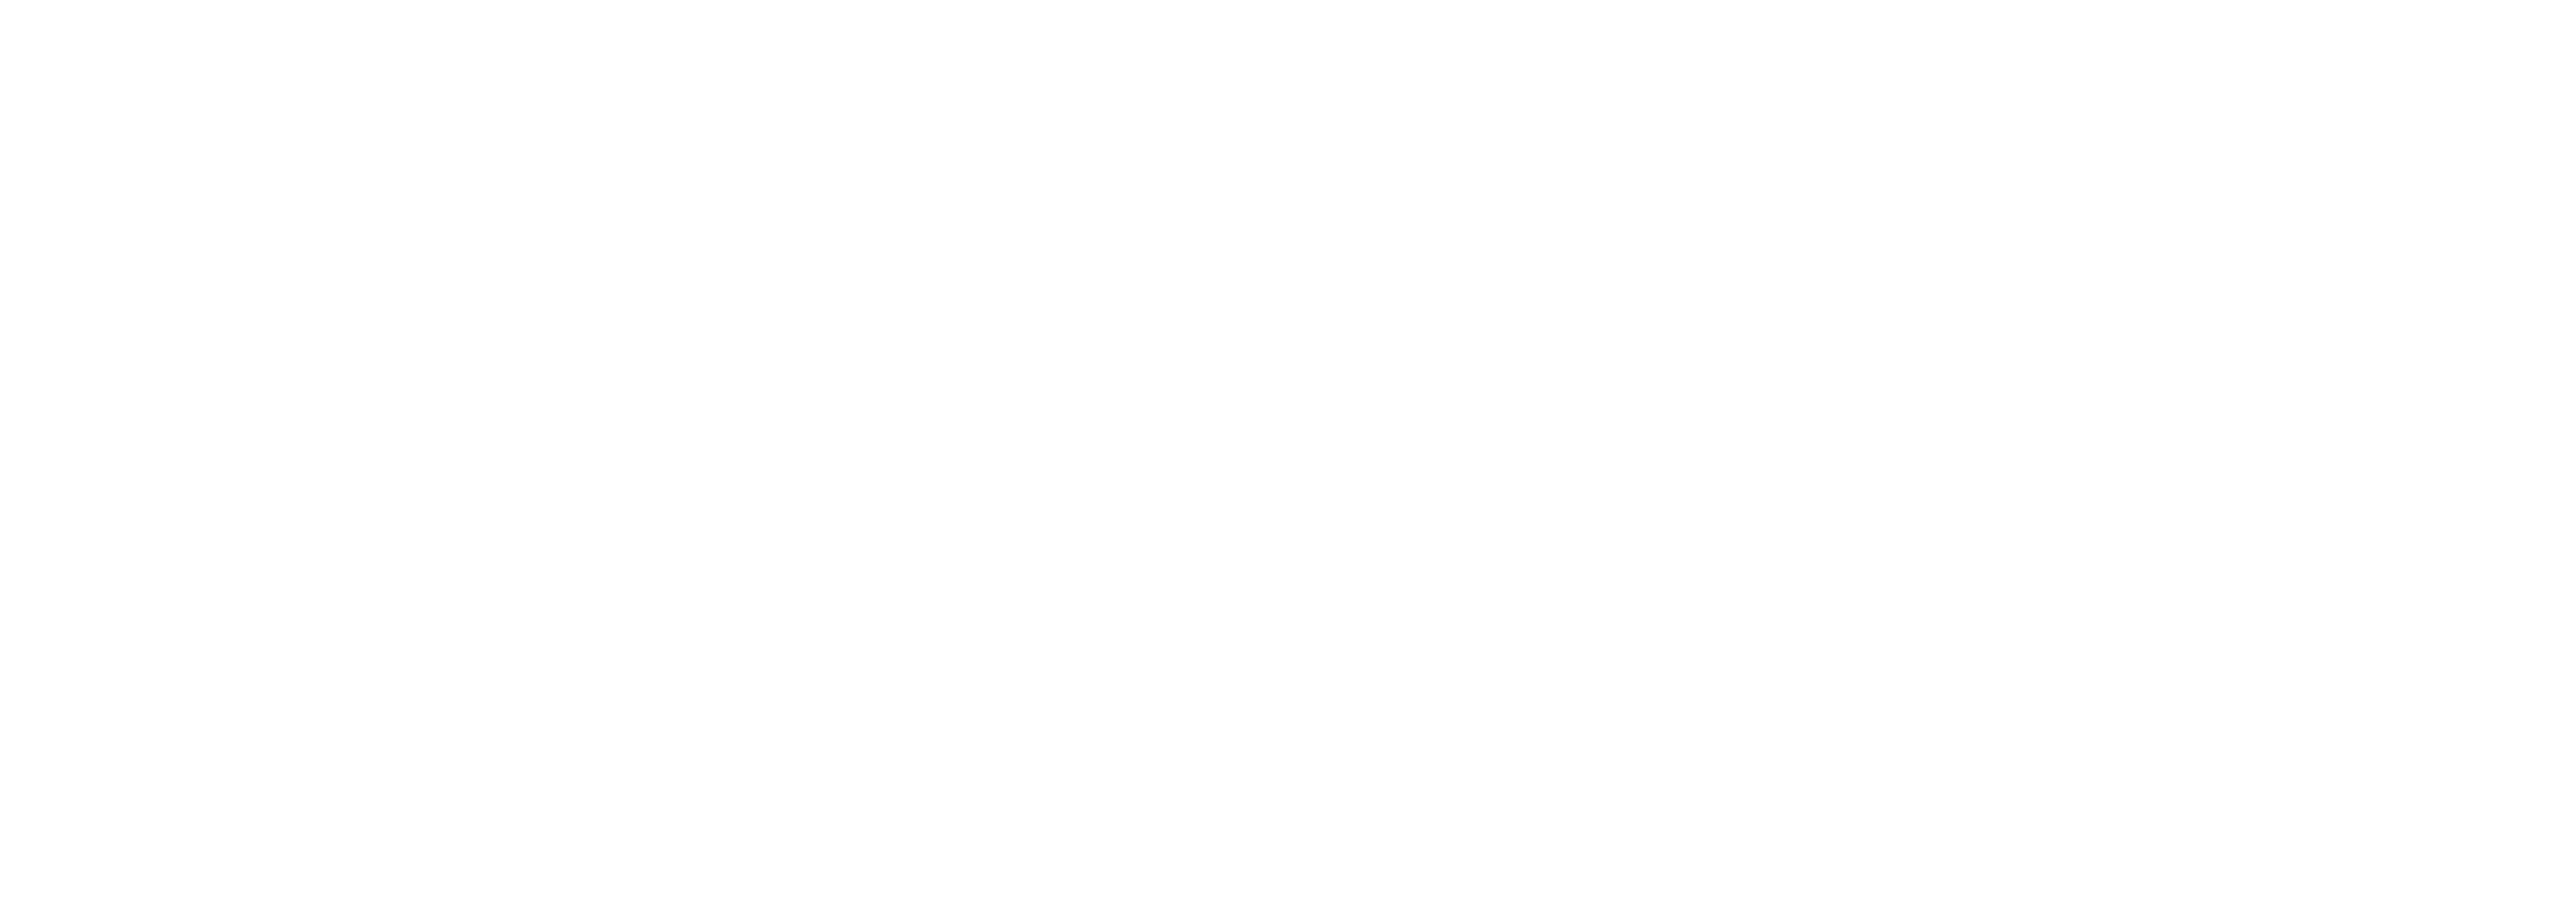 Bott & Associates, Ltd.